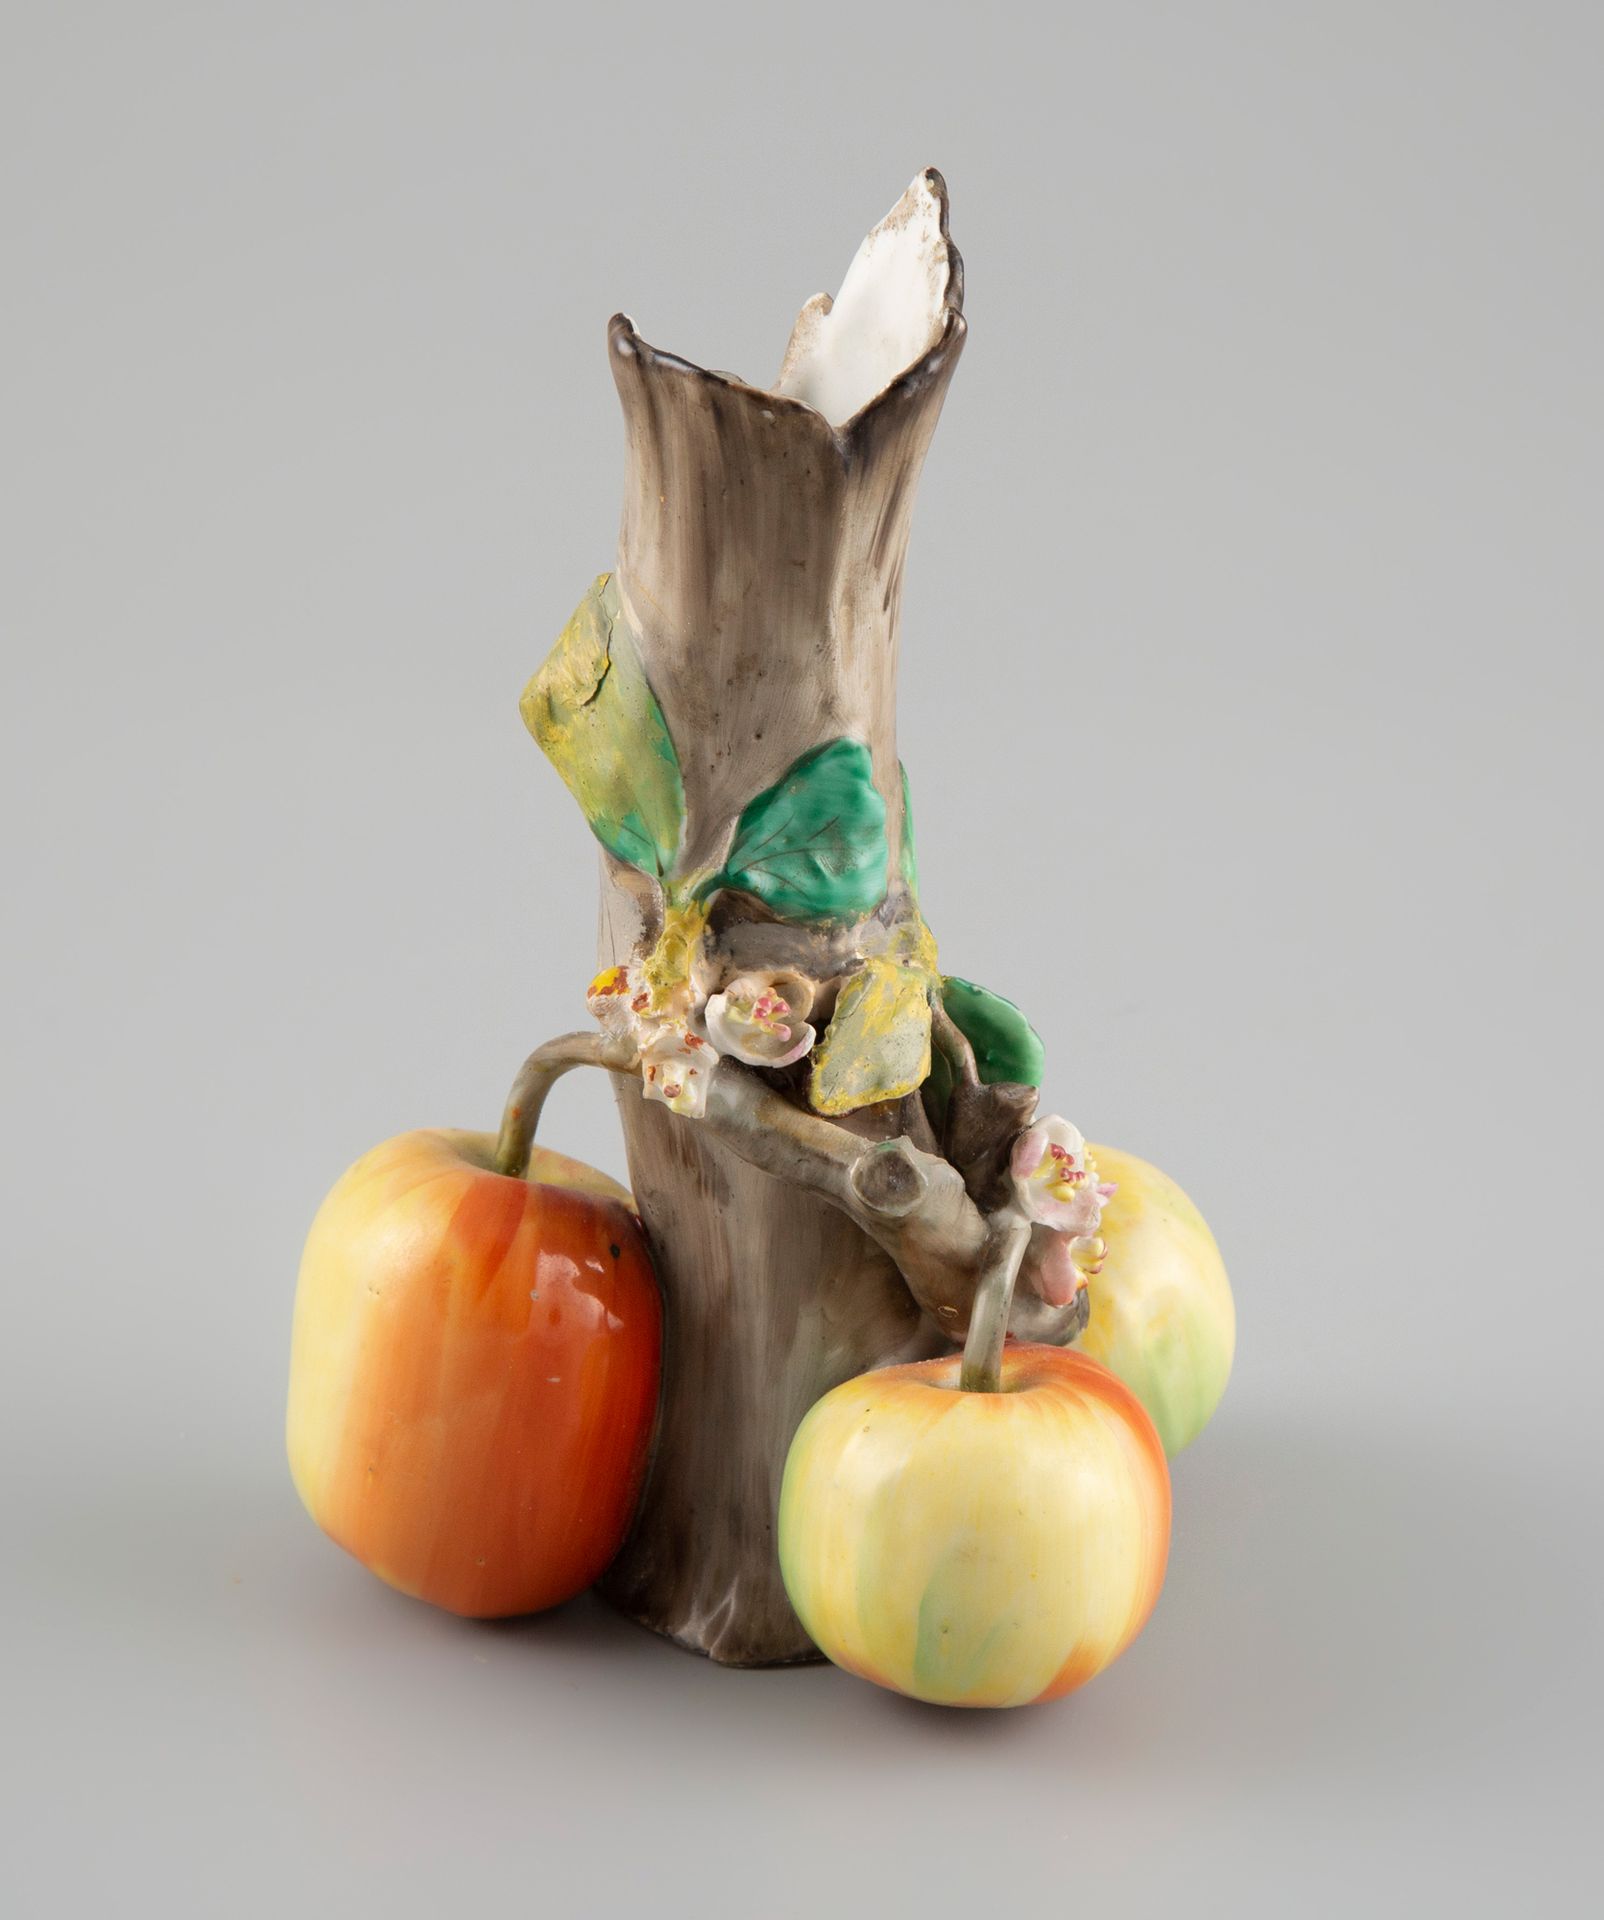 Null Vase, Les trois pommes

H.: 15,5 cm. (cheveu en-dessous)